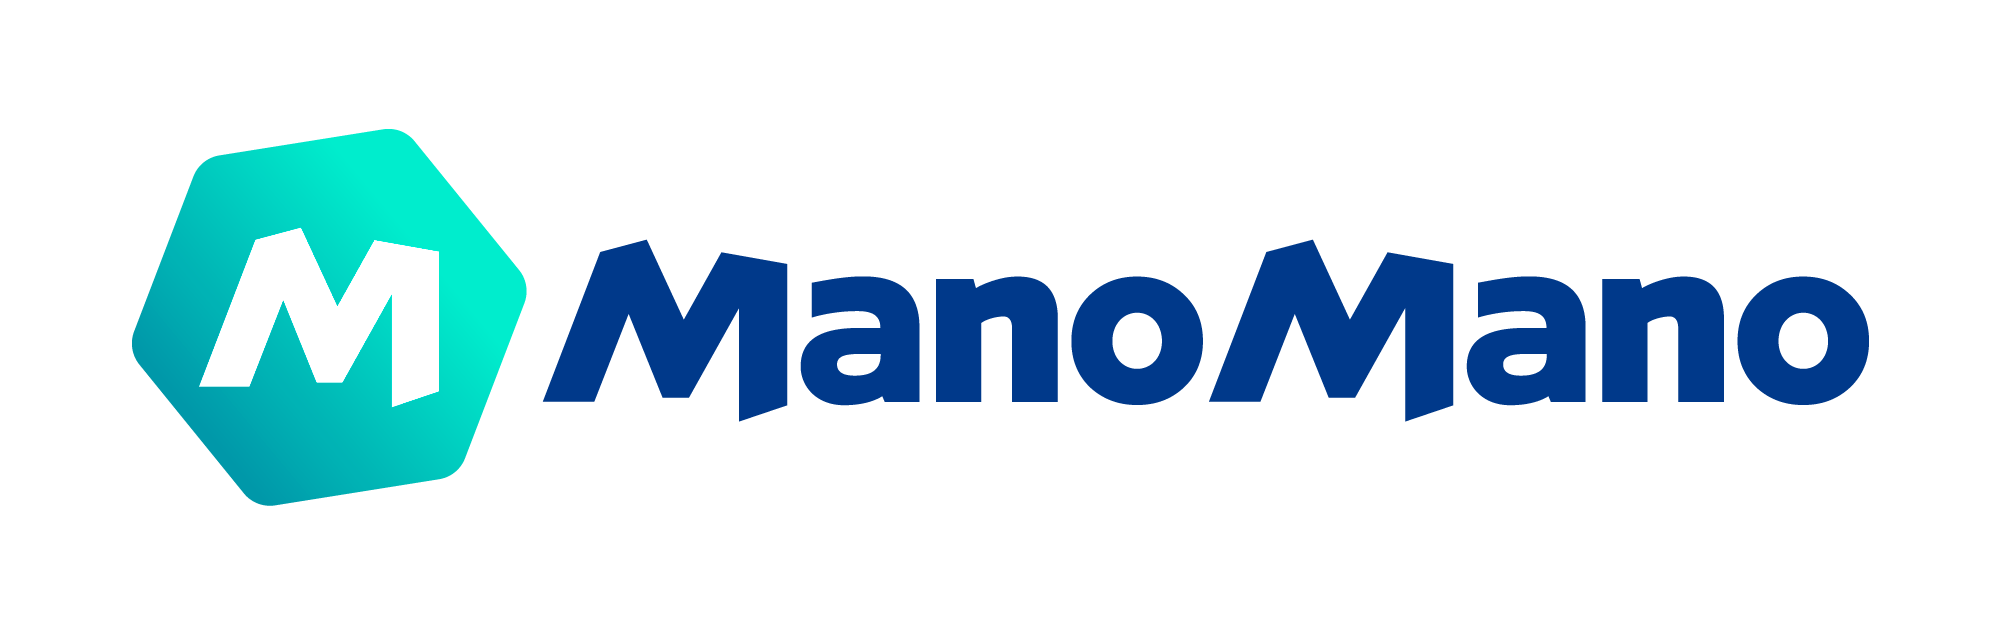 Market image shows logotype of Amazon